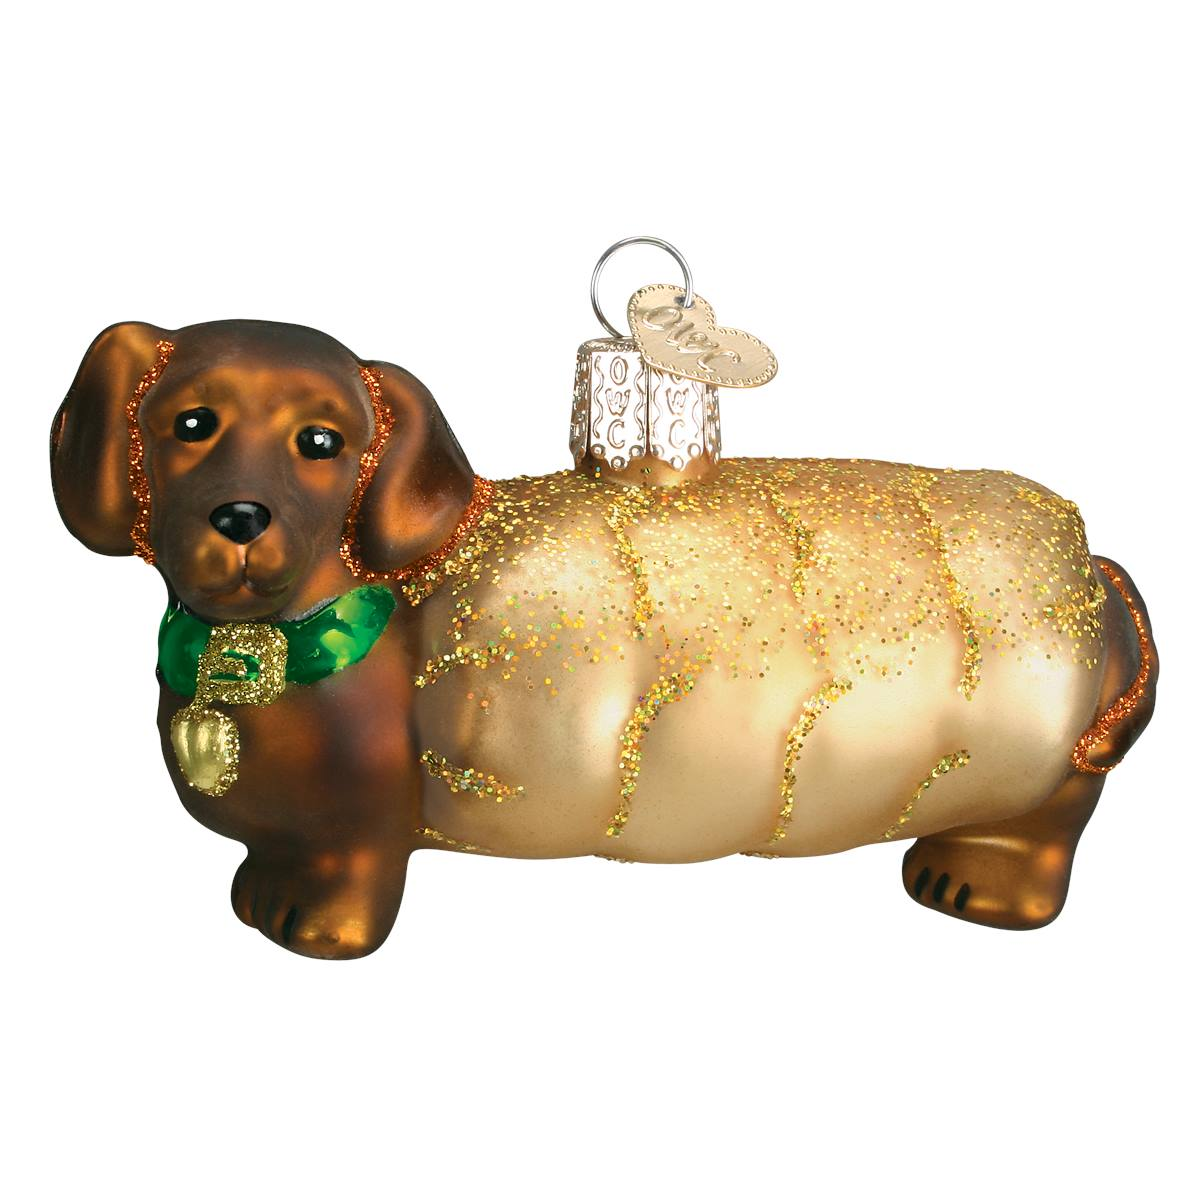 Weiner Dog Ornament